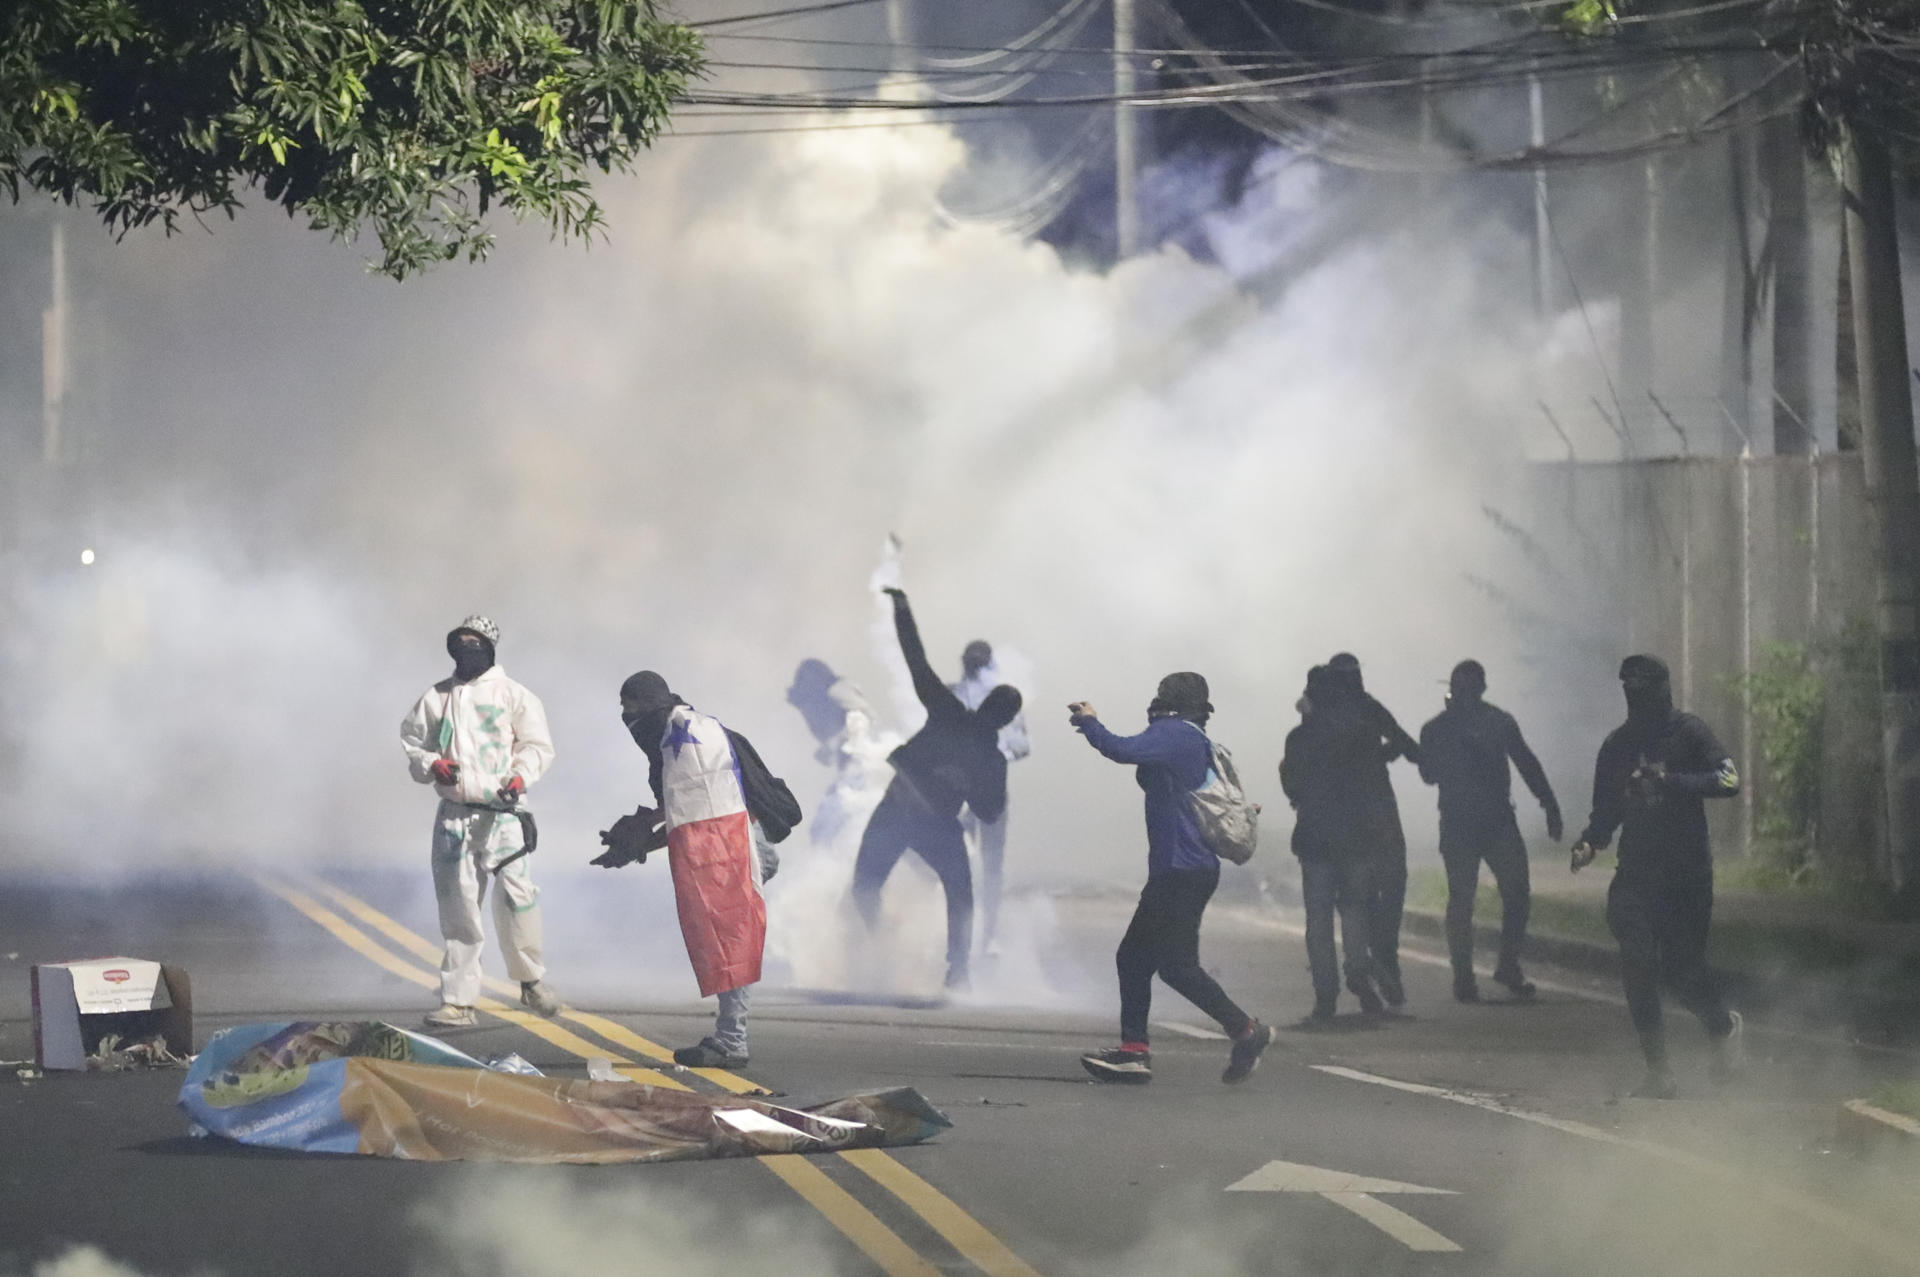 Miles de migrantes varados en su camino hacia EEUU por protestas en Panamá